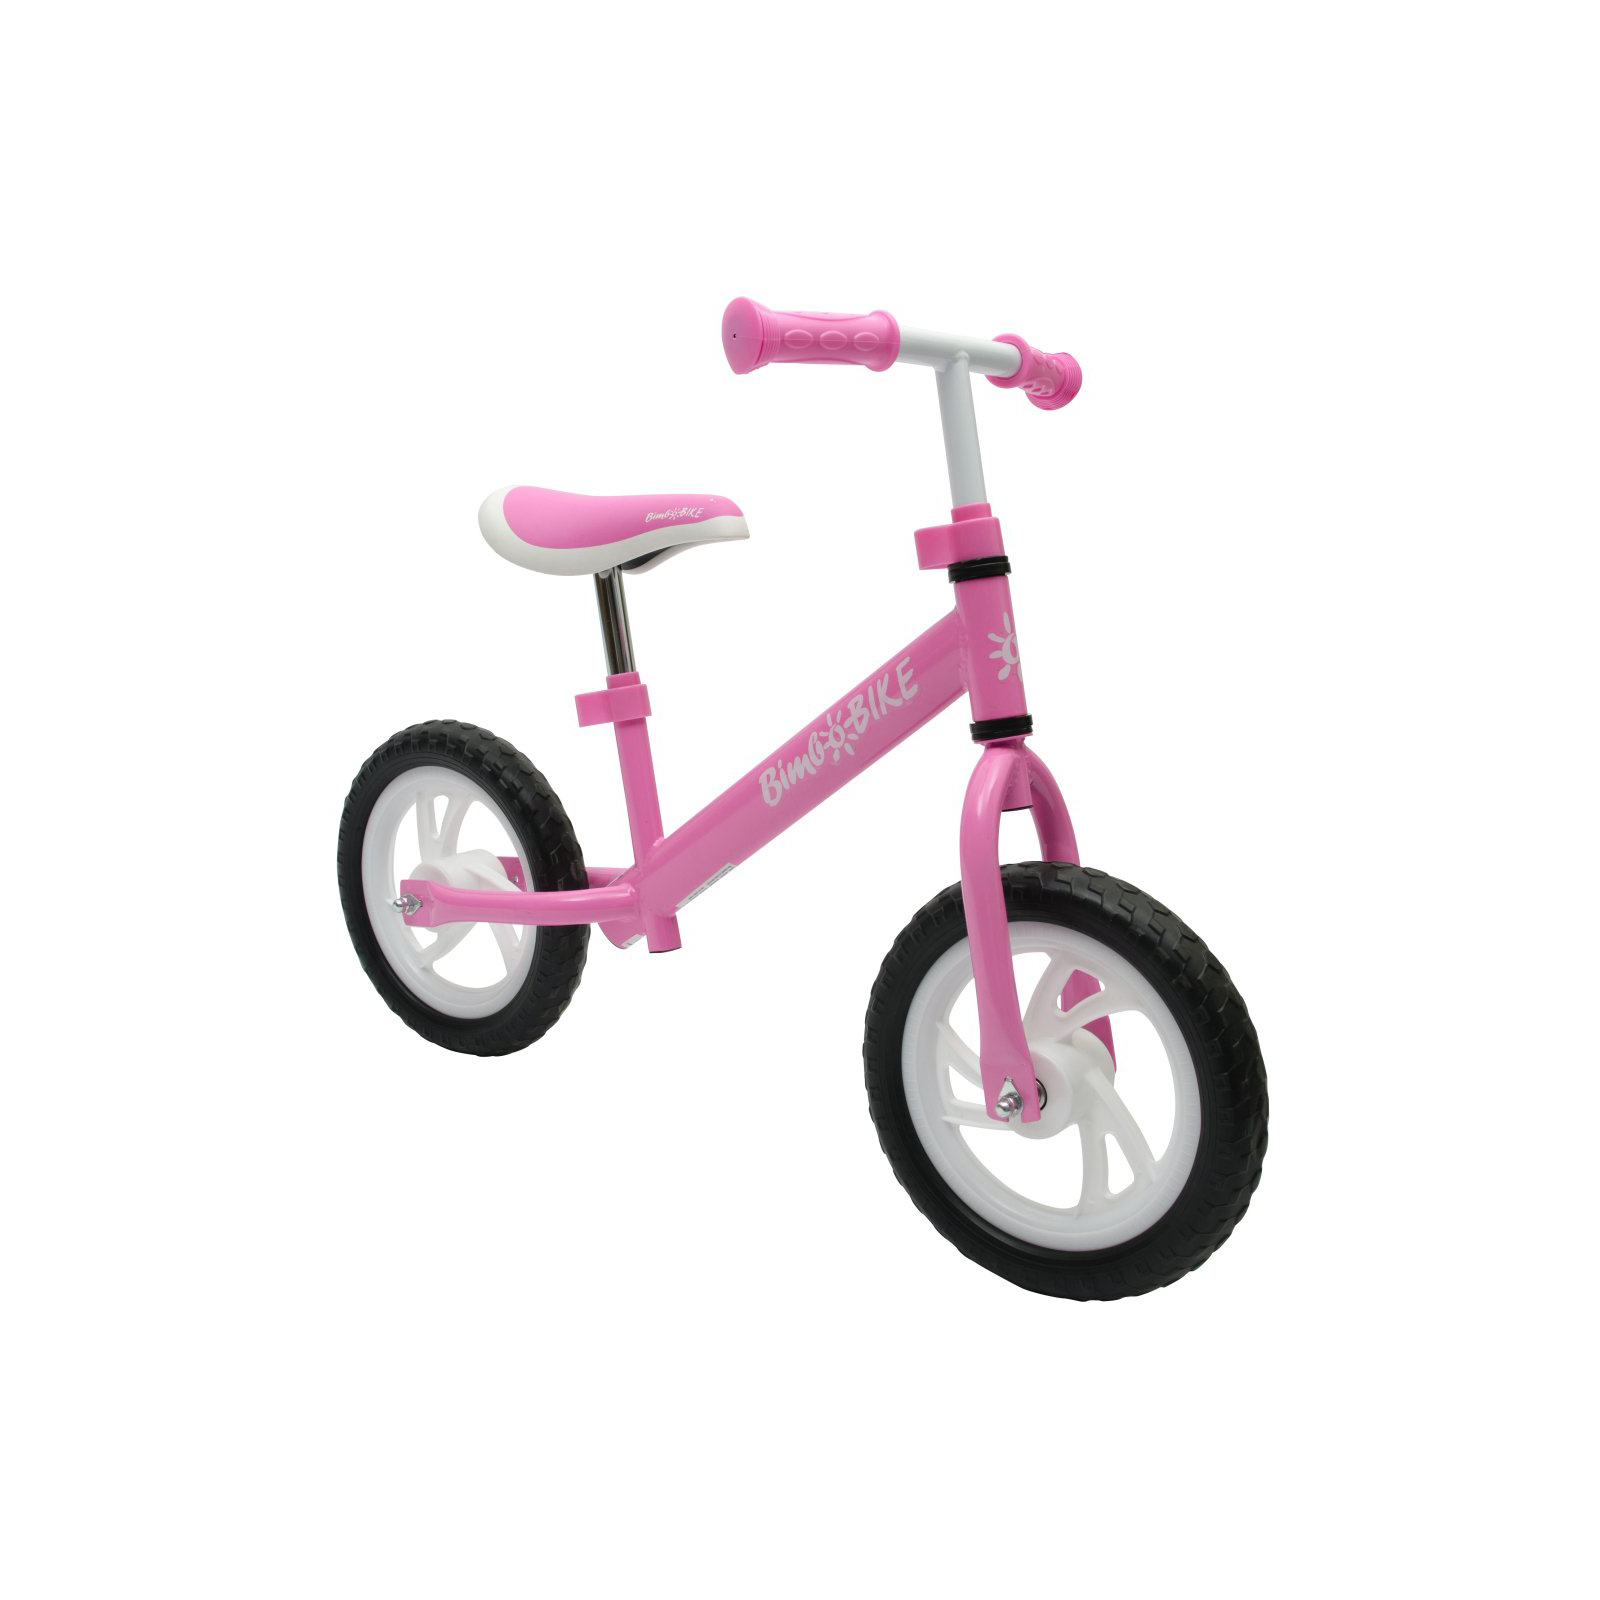 Беговел Bimbo Bike 12`, розово-белый (75901-IS)